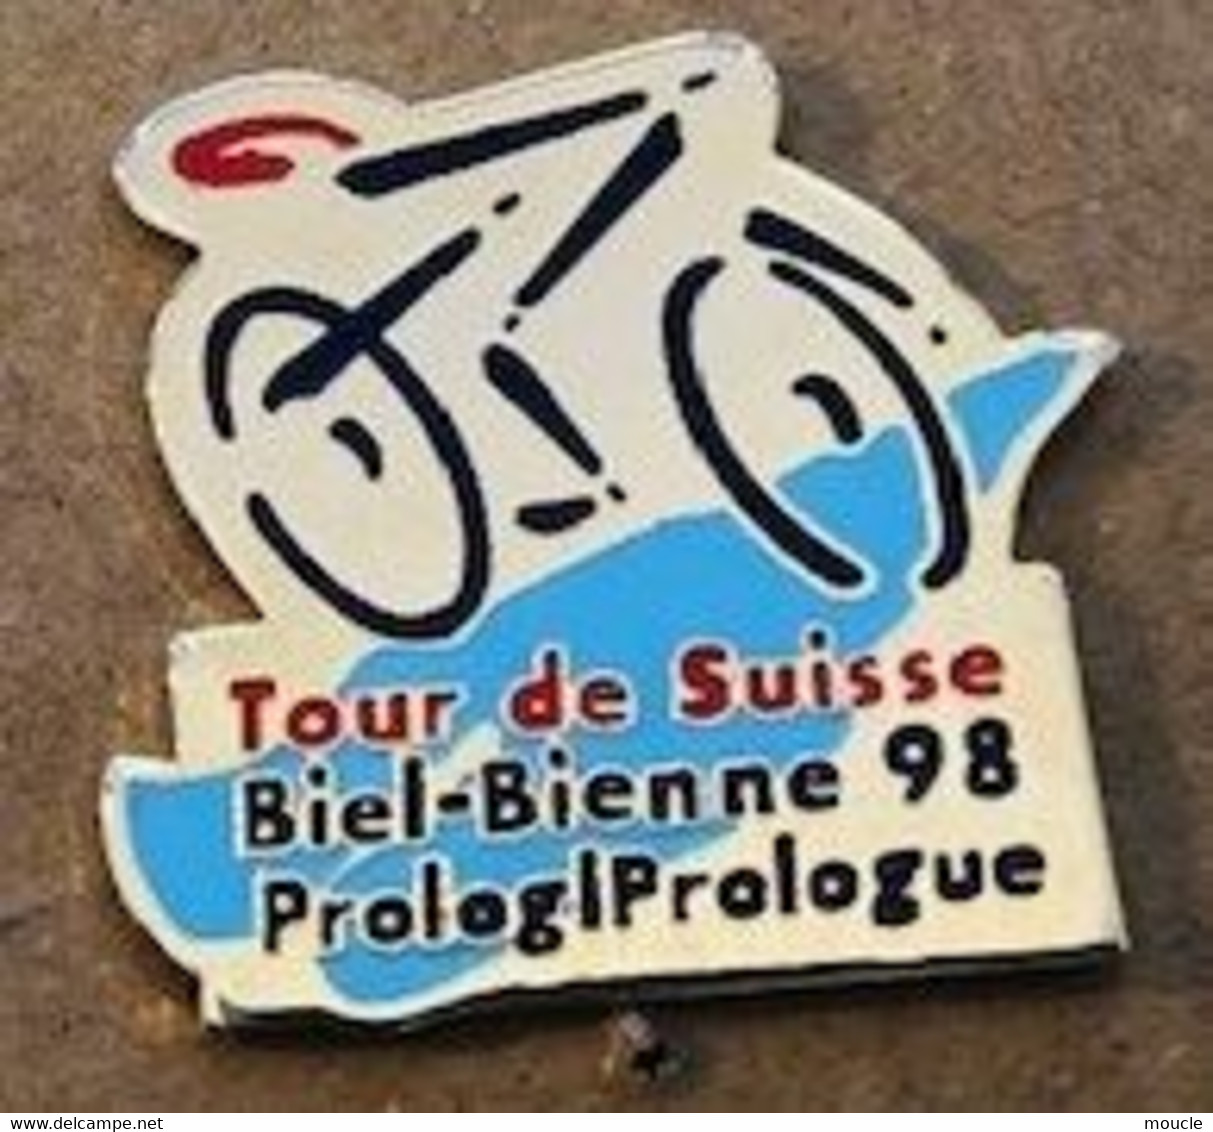 VELO - CYCLISME - CYCLISTE - TOUR DE SUISSE 1998 - BIENNE - BIEL - PROLOGUE - PROLOG - SCHWEIZ -  CYCLING - (20) - Cyclisme